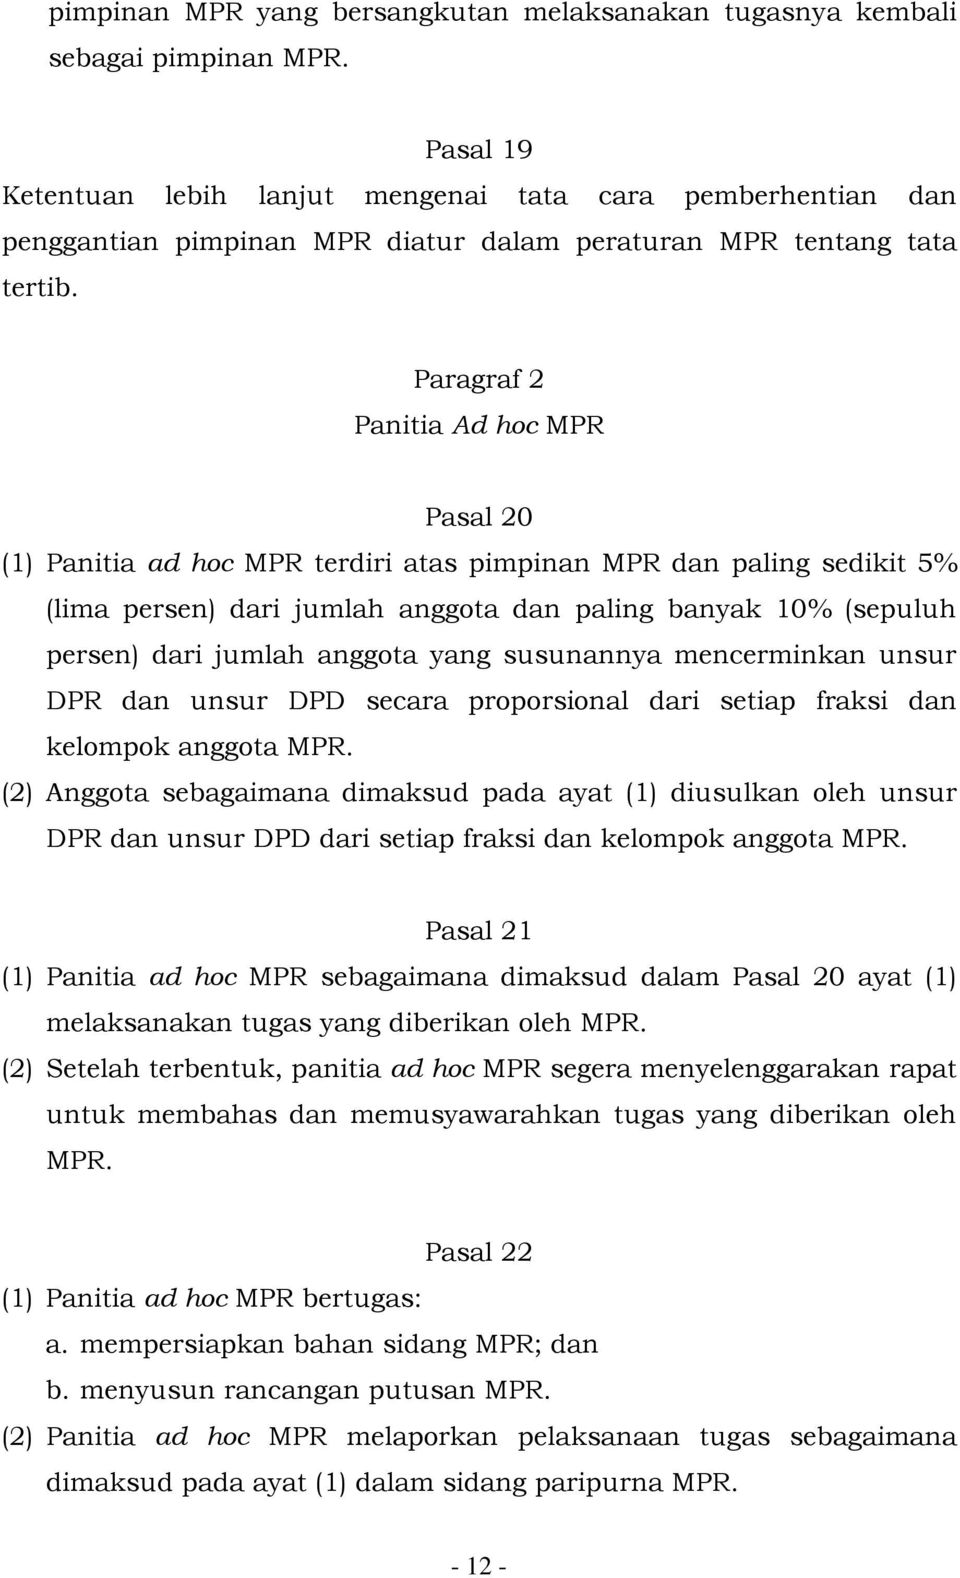 Paragraf 2 Panitia Ad hoc MPR Pasal 20 (1) Panitia ad hoc MPR terdiri atas pimpinan MPR dan paling sedikit 5% (lima persen) dari jumlah anggota dan paling banyak 10% (sepuluh persen) dari jumlah